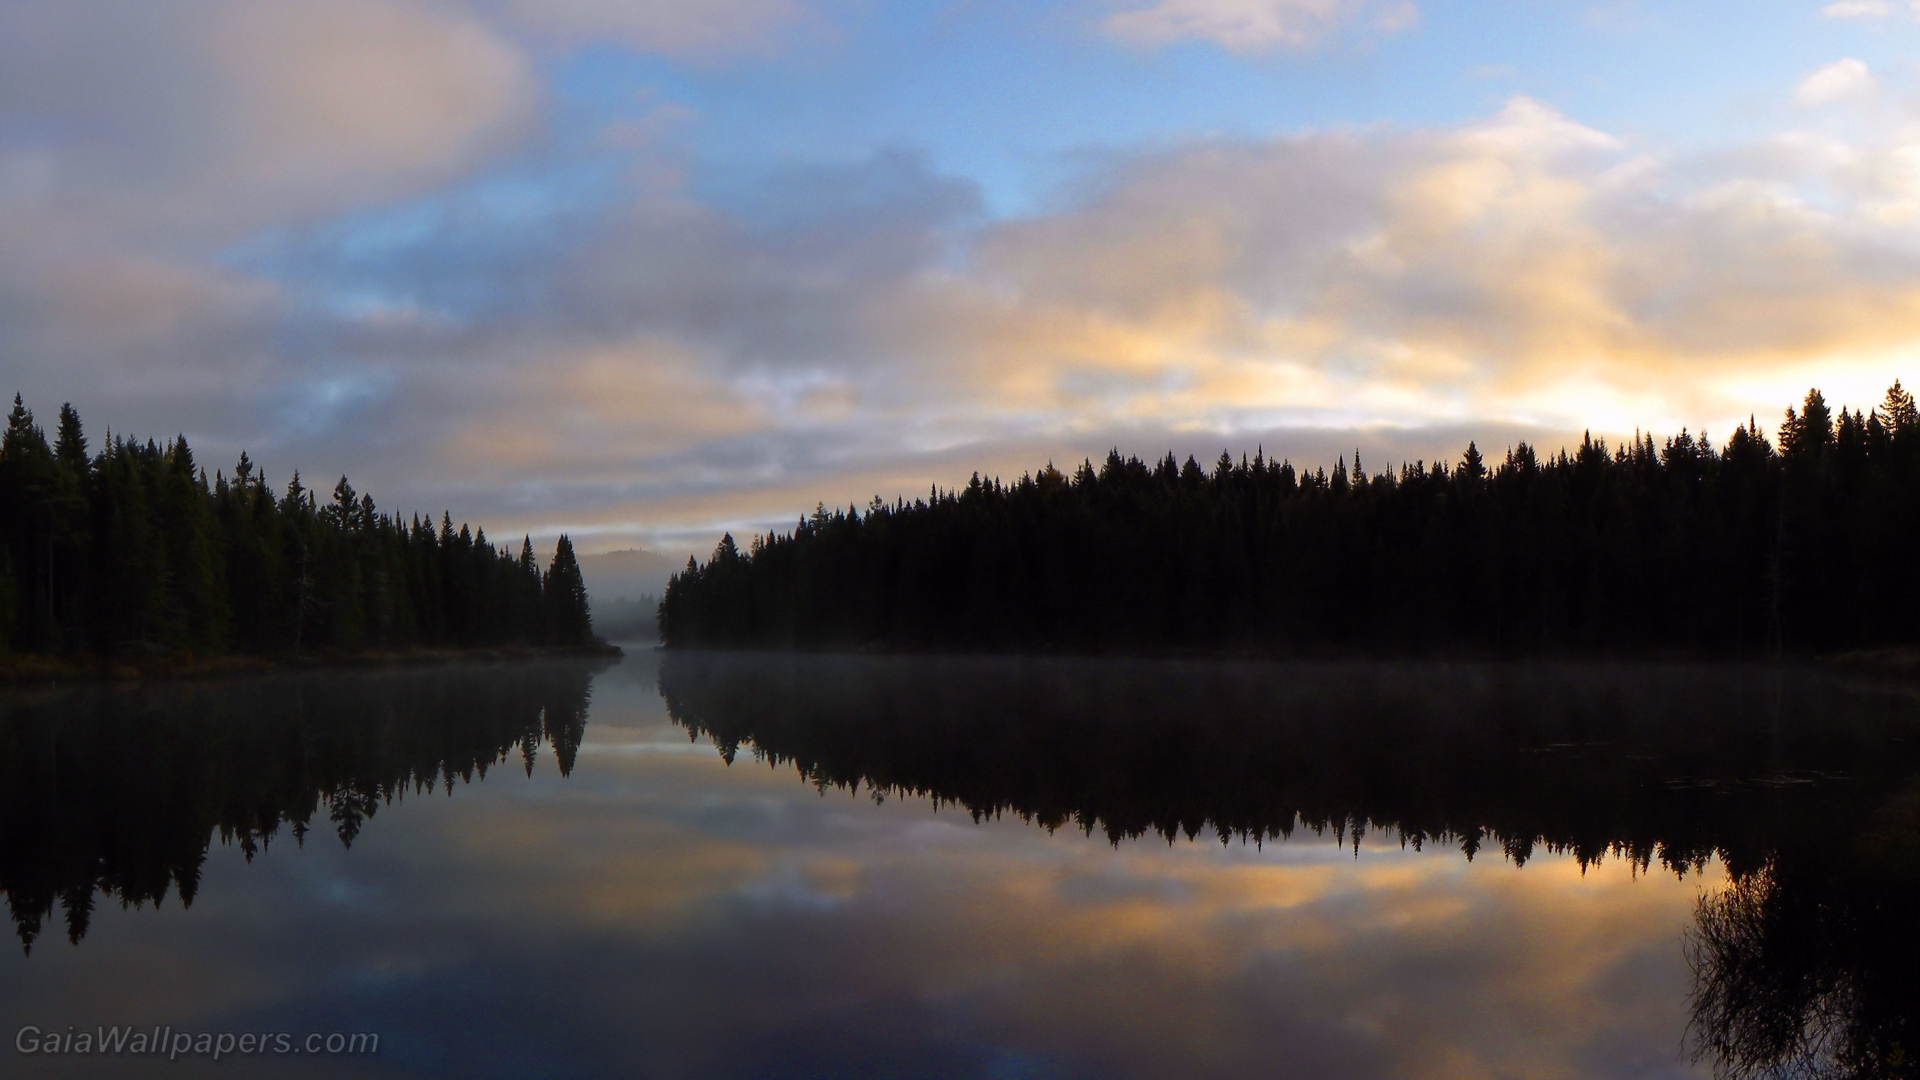 Lever du soleil dans la forêt se refletant sur un lac calme - Fonds d'écran gratuits